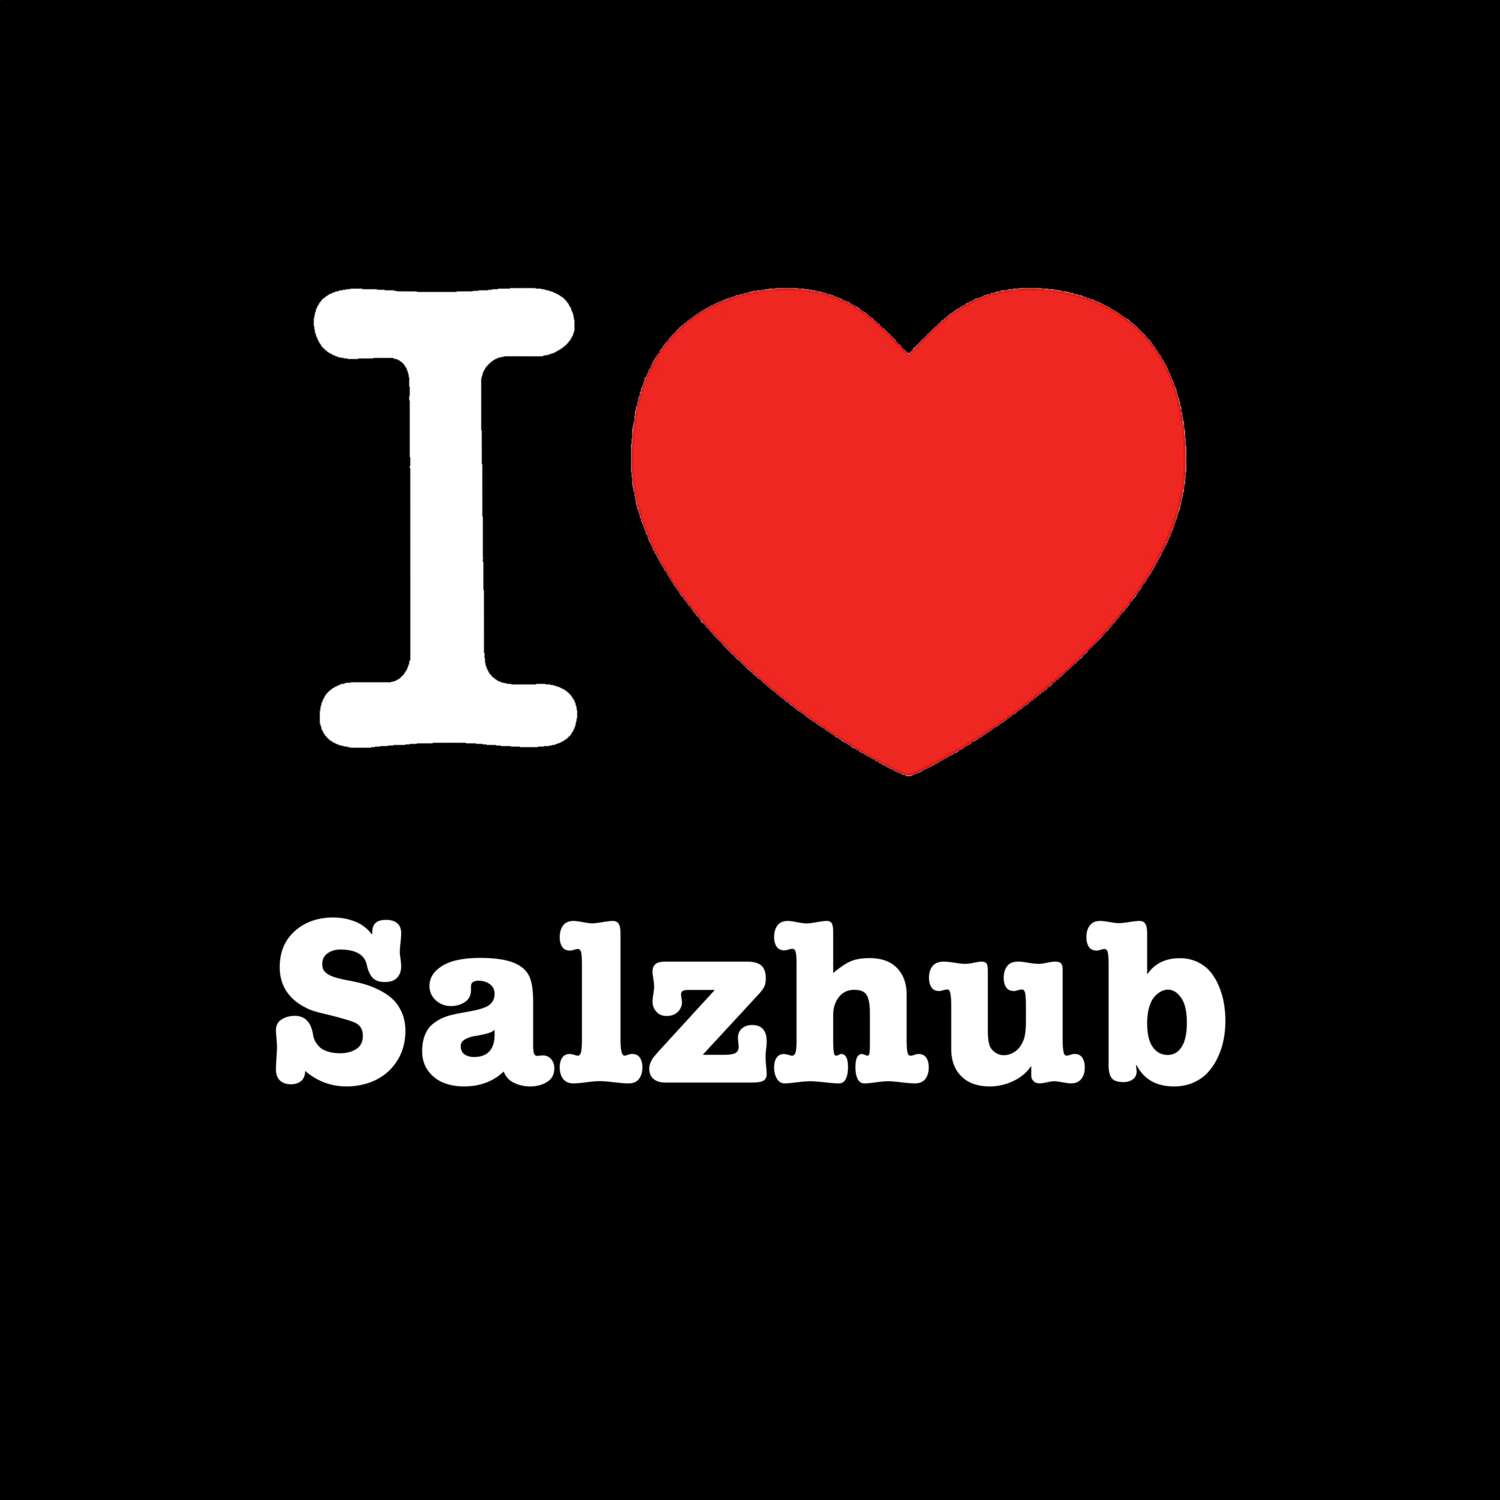 Salzhub T-Shirt »I love«